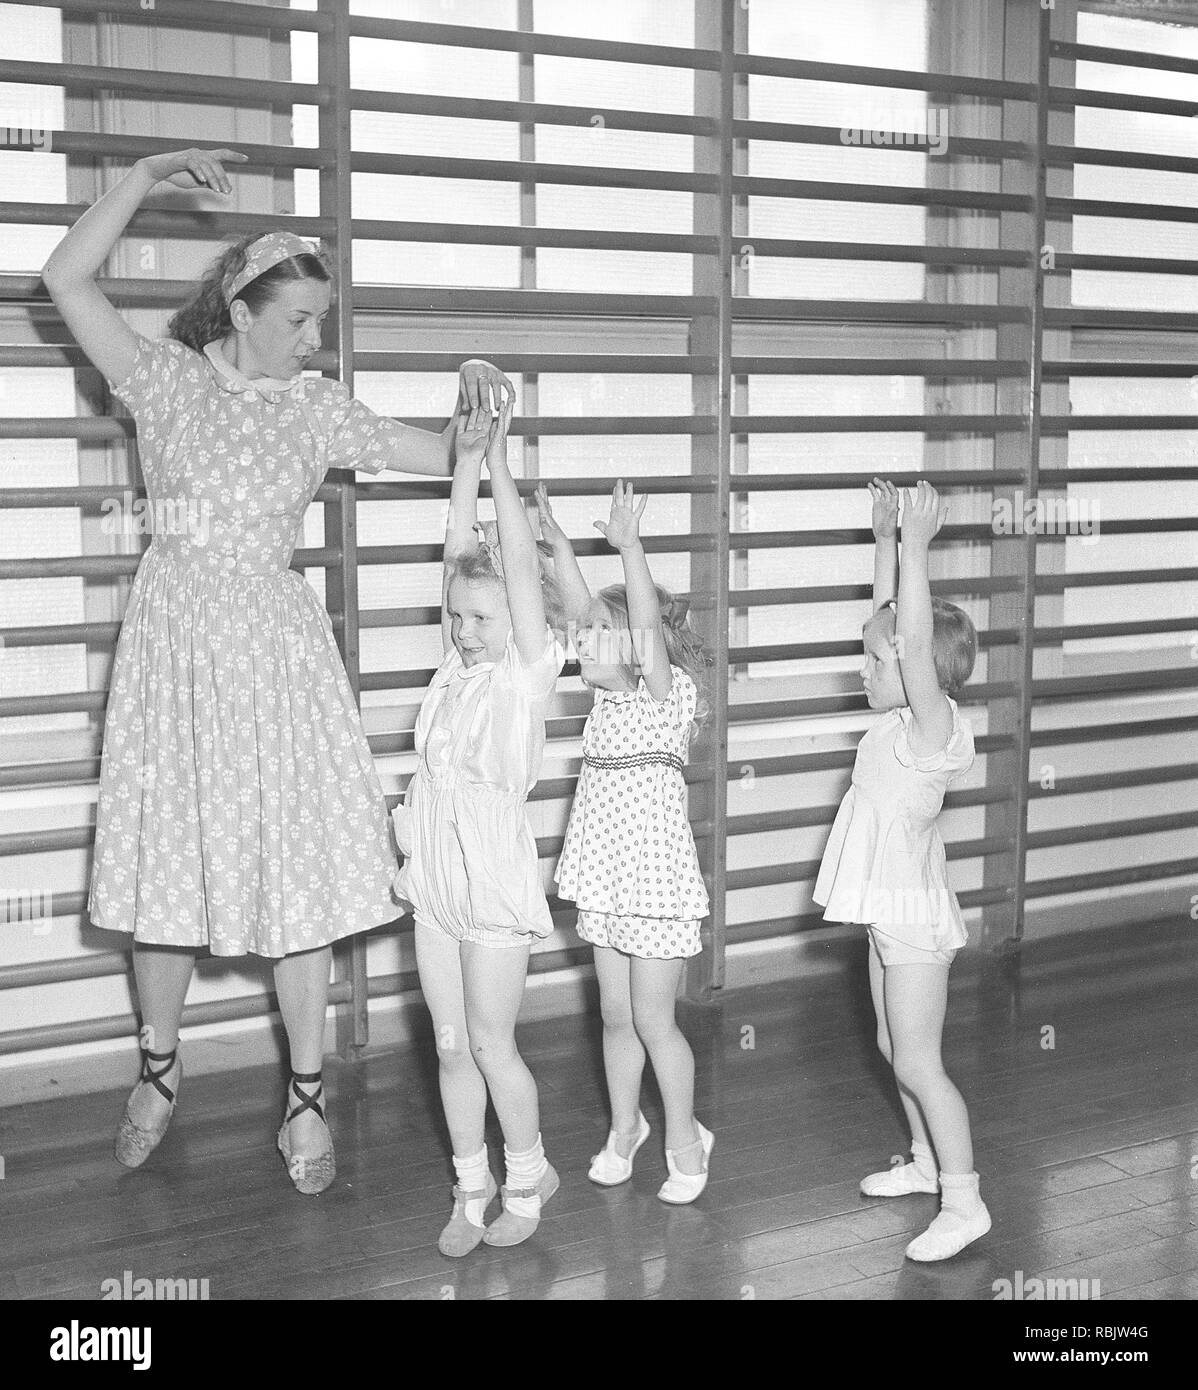 Ginnastica in 1940s. Un insegnante di donne nella palestra della scuola è che mostra come spostare e danza. Tre bambini in età diverse cerca di seguire il suo piombo. Foto Kristoffersson Ref AB22-12. La Svezia 1940s Foto Stock